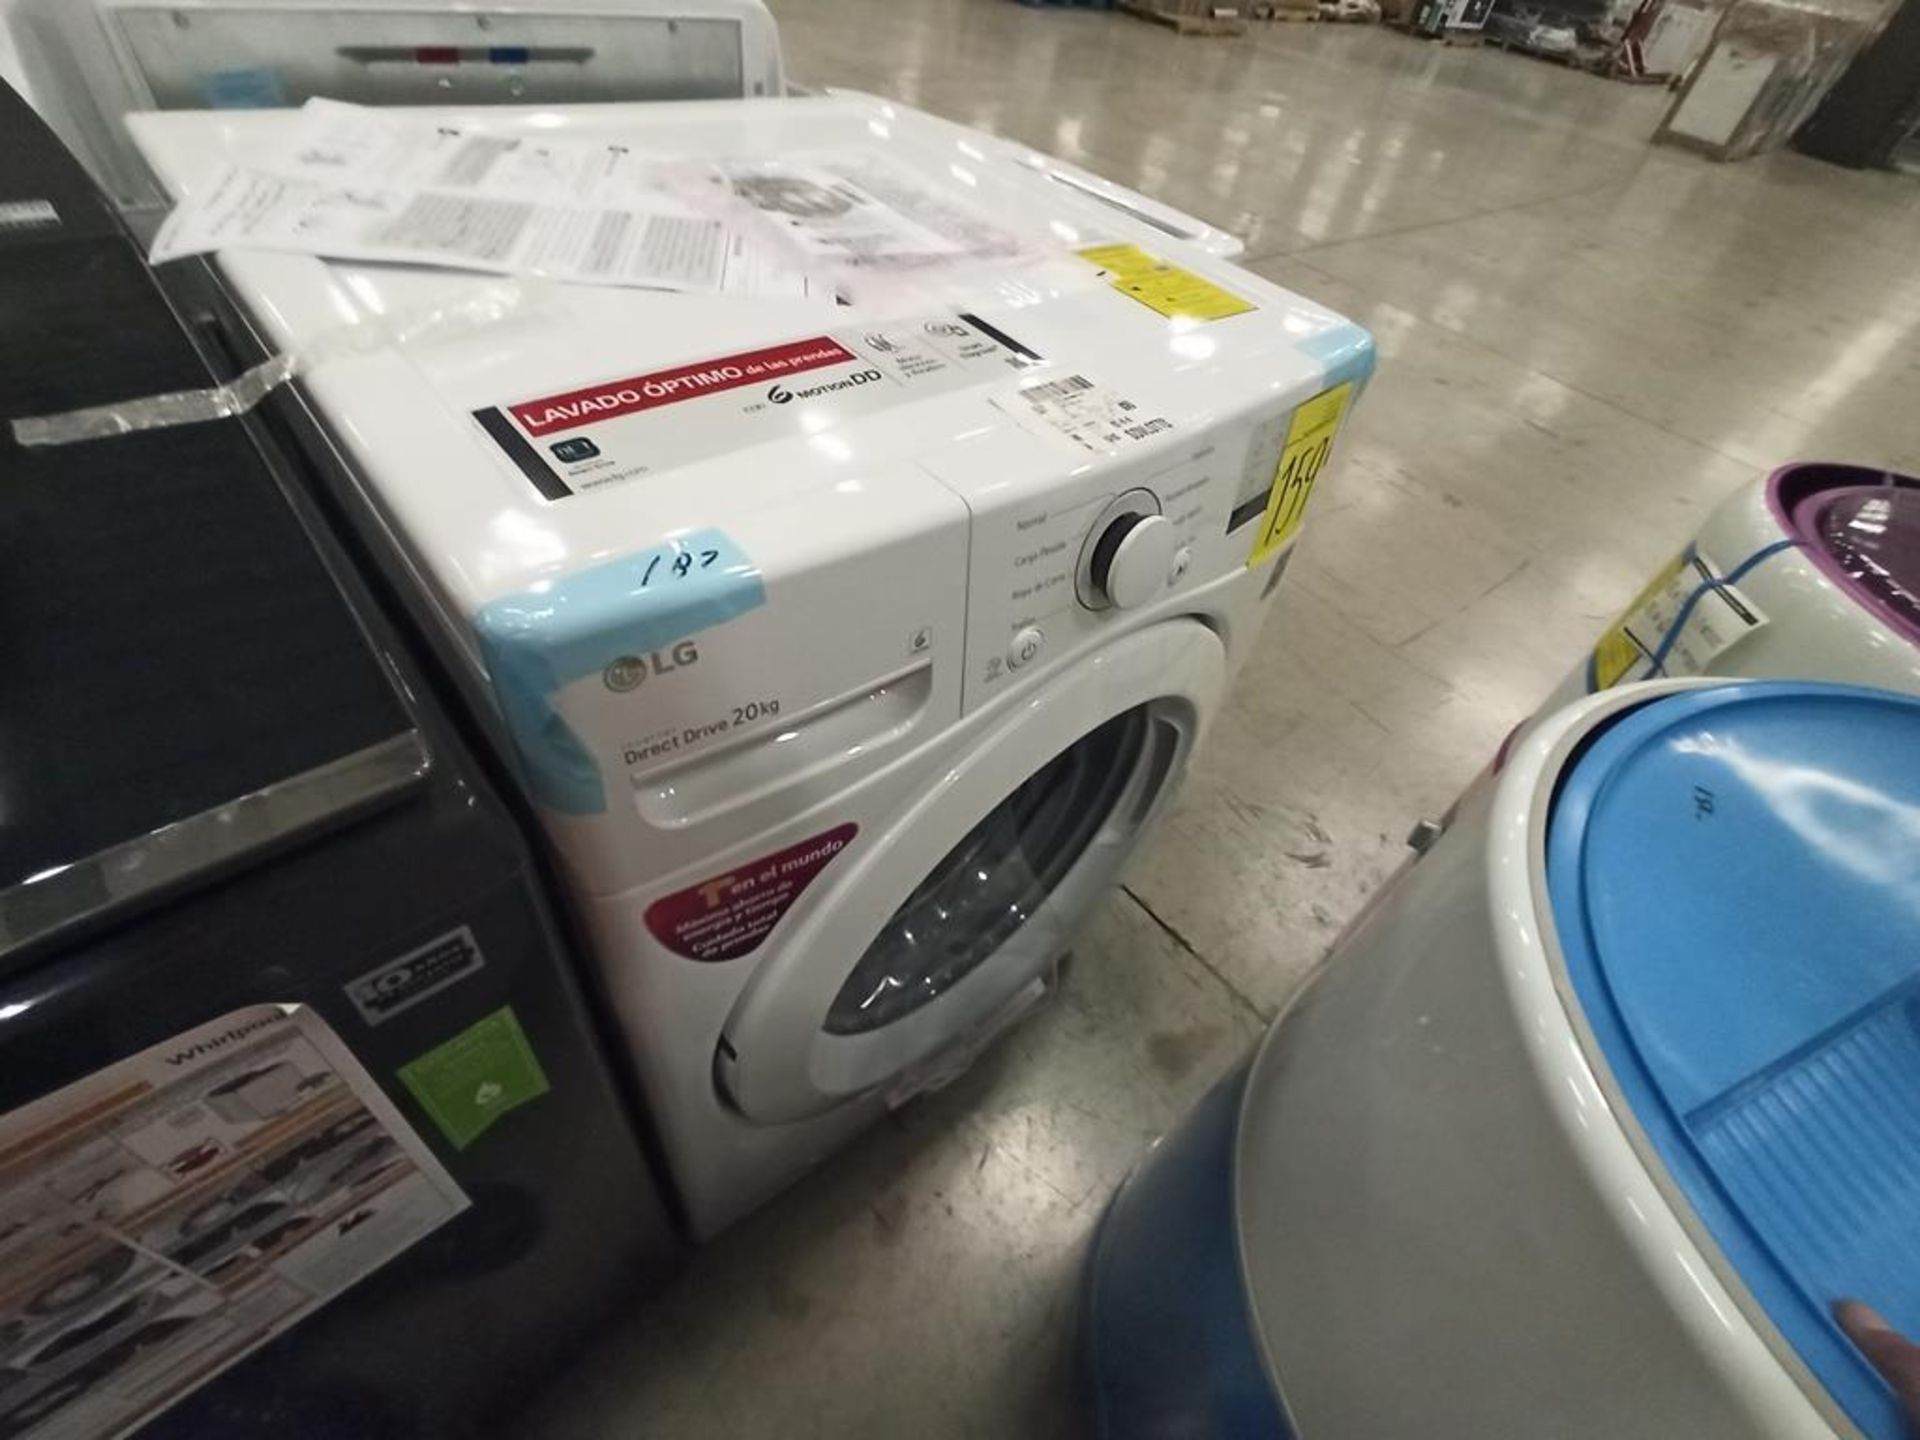 Lote de 2 lavadoras contiene: 1 lavadora de 24kg Marca WHIRPOOL, Modelo 8MWTWLA41WJG0, SerieHLB3888 - Image 12 of 18